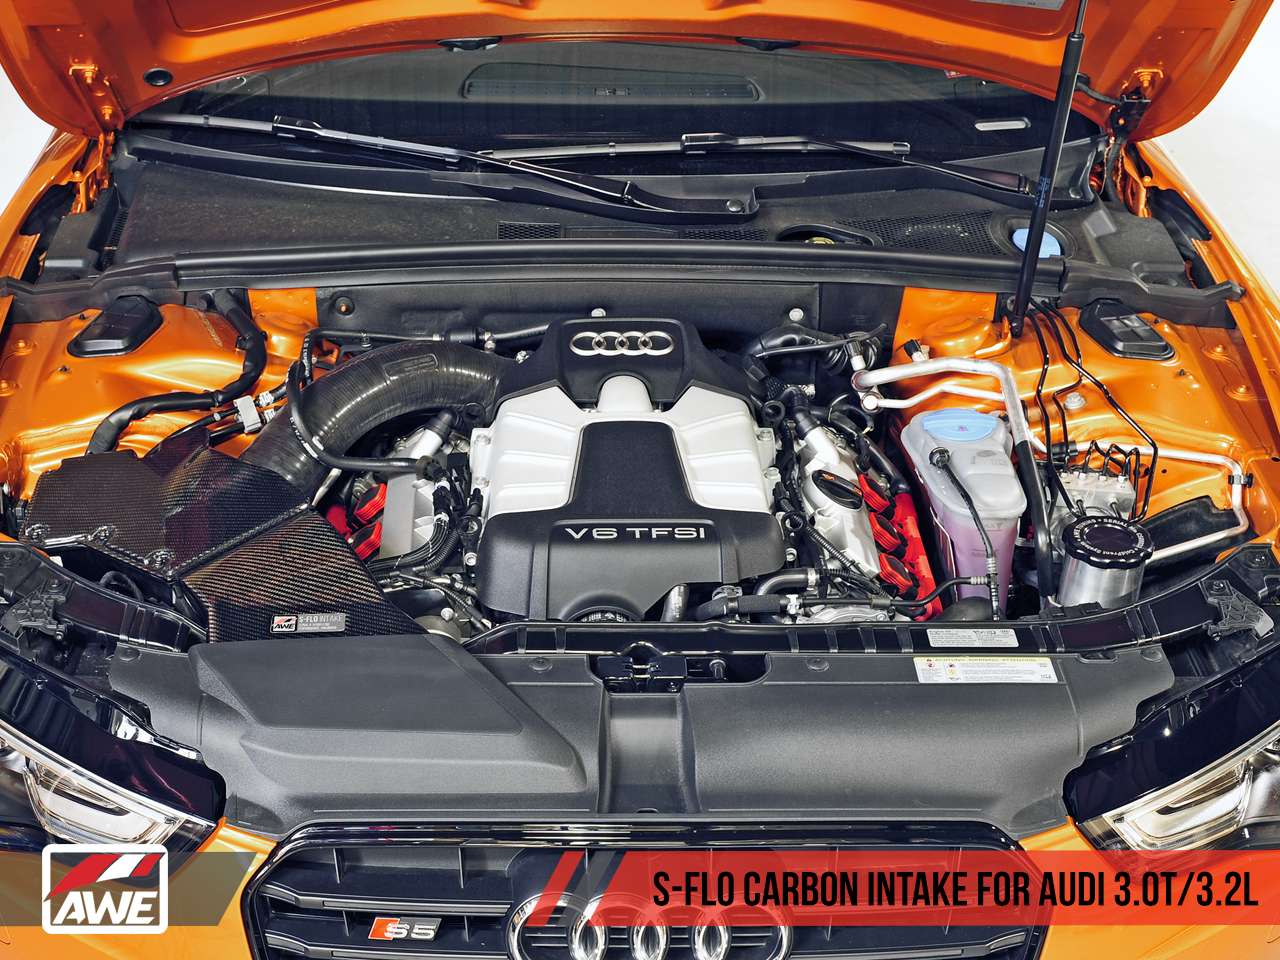 AWE S-FLO Carbon Intake for Audi B8.5 3.0T